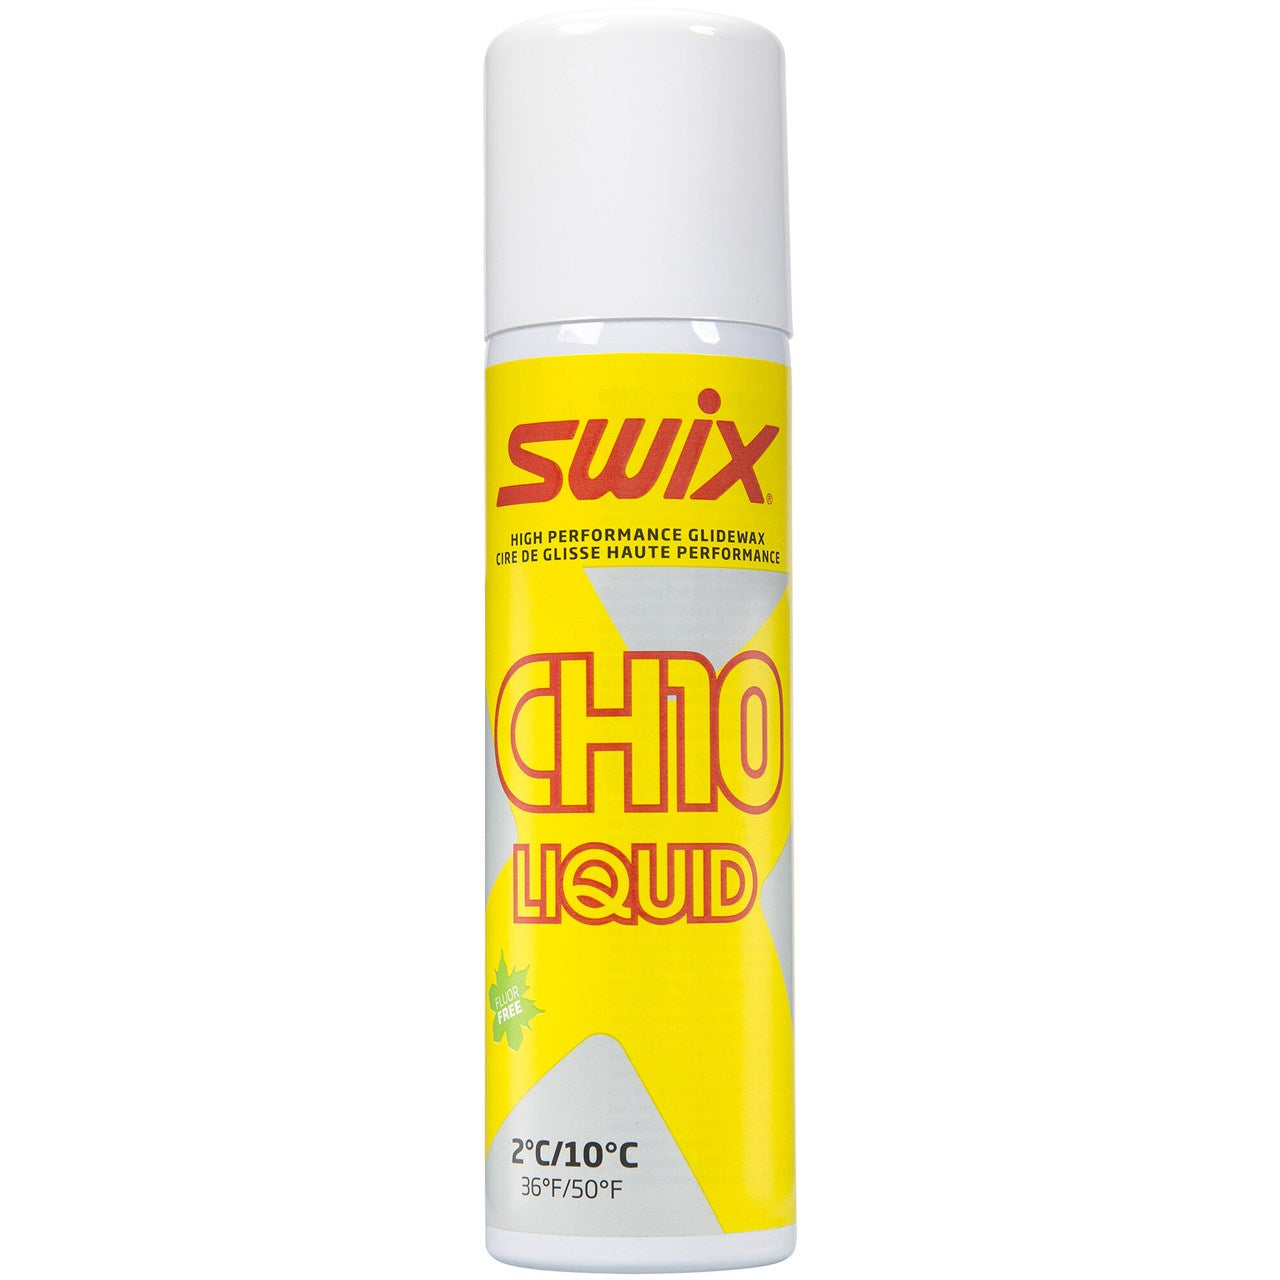 Swix CHX Liquid Wax Range ch10xl